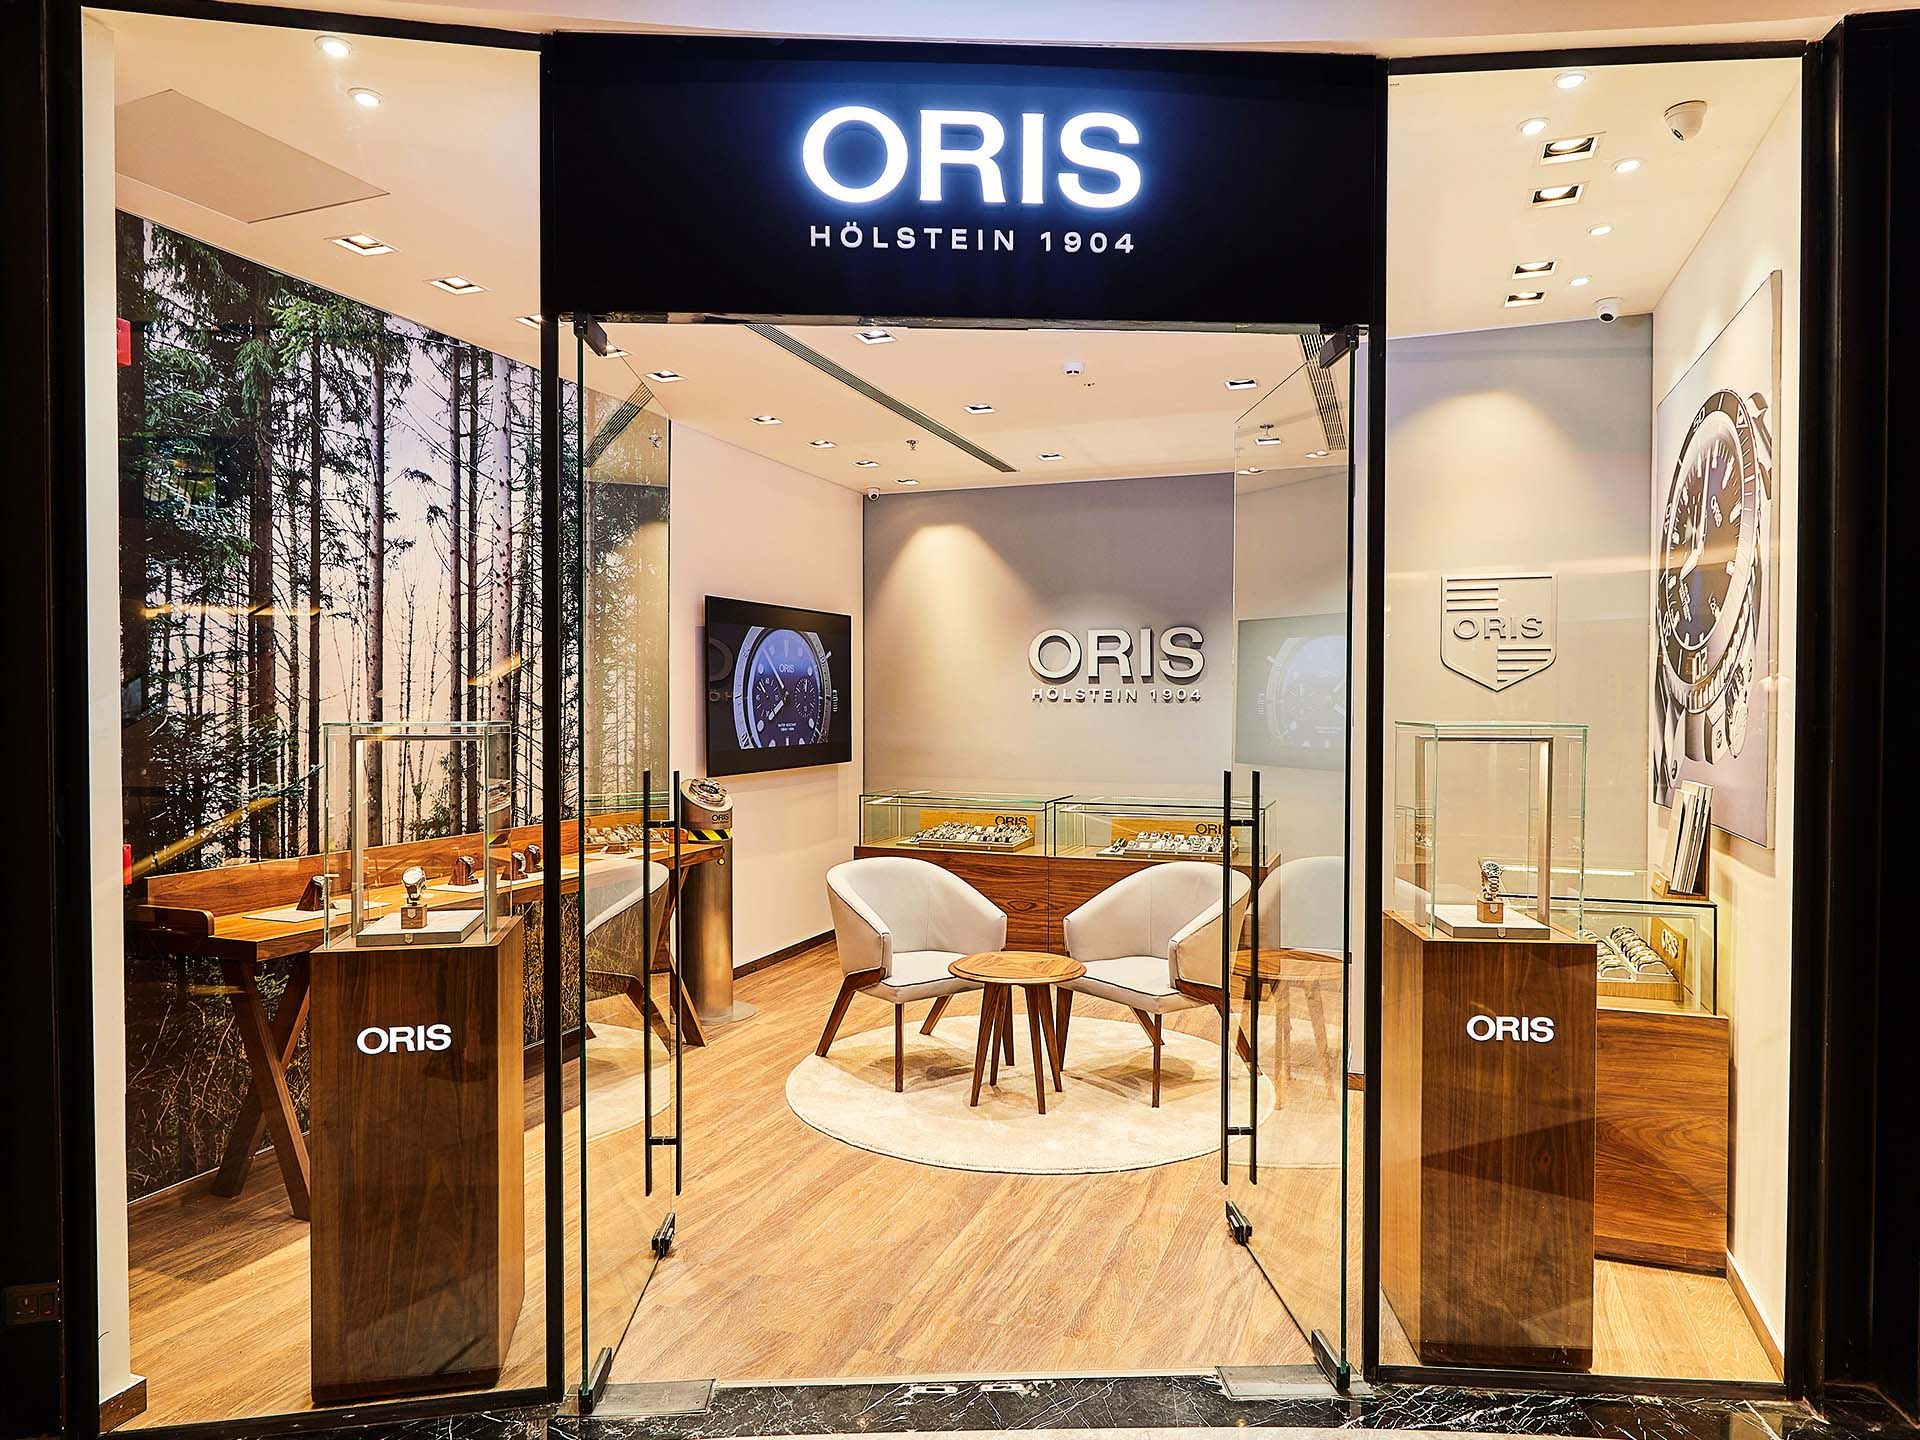 Oris Boutique - Ethos watches, Chennai, Tamil Nadu